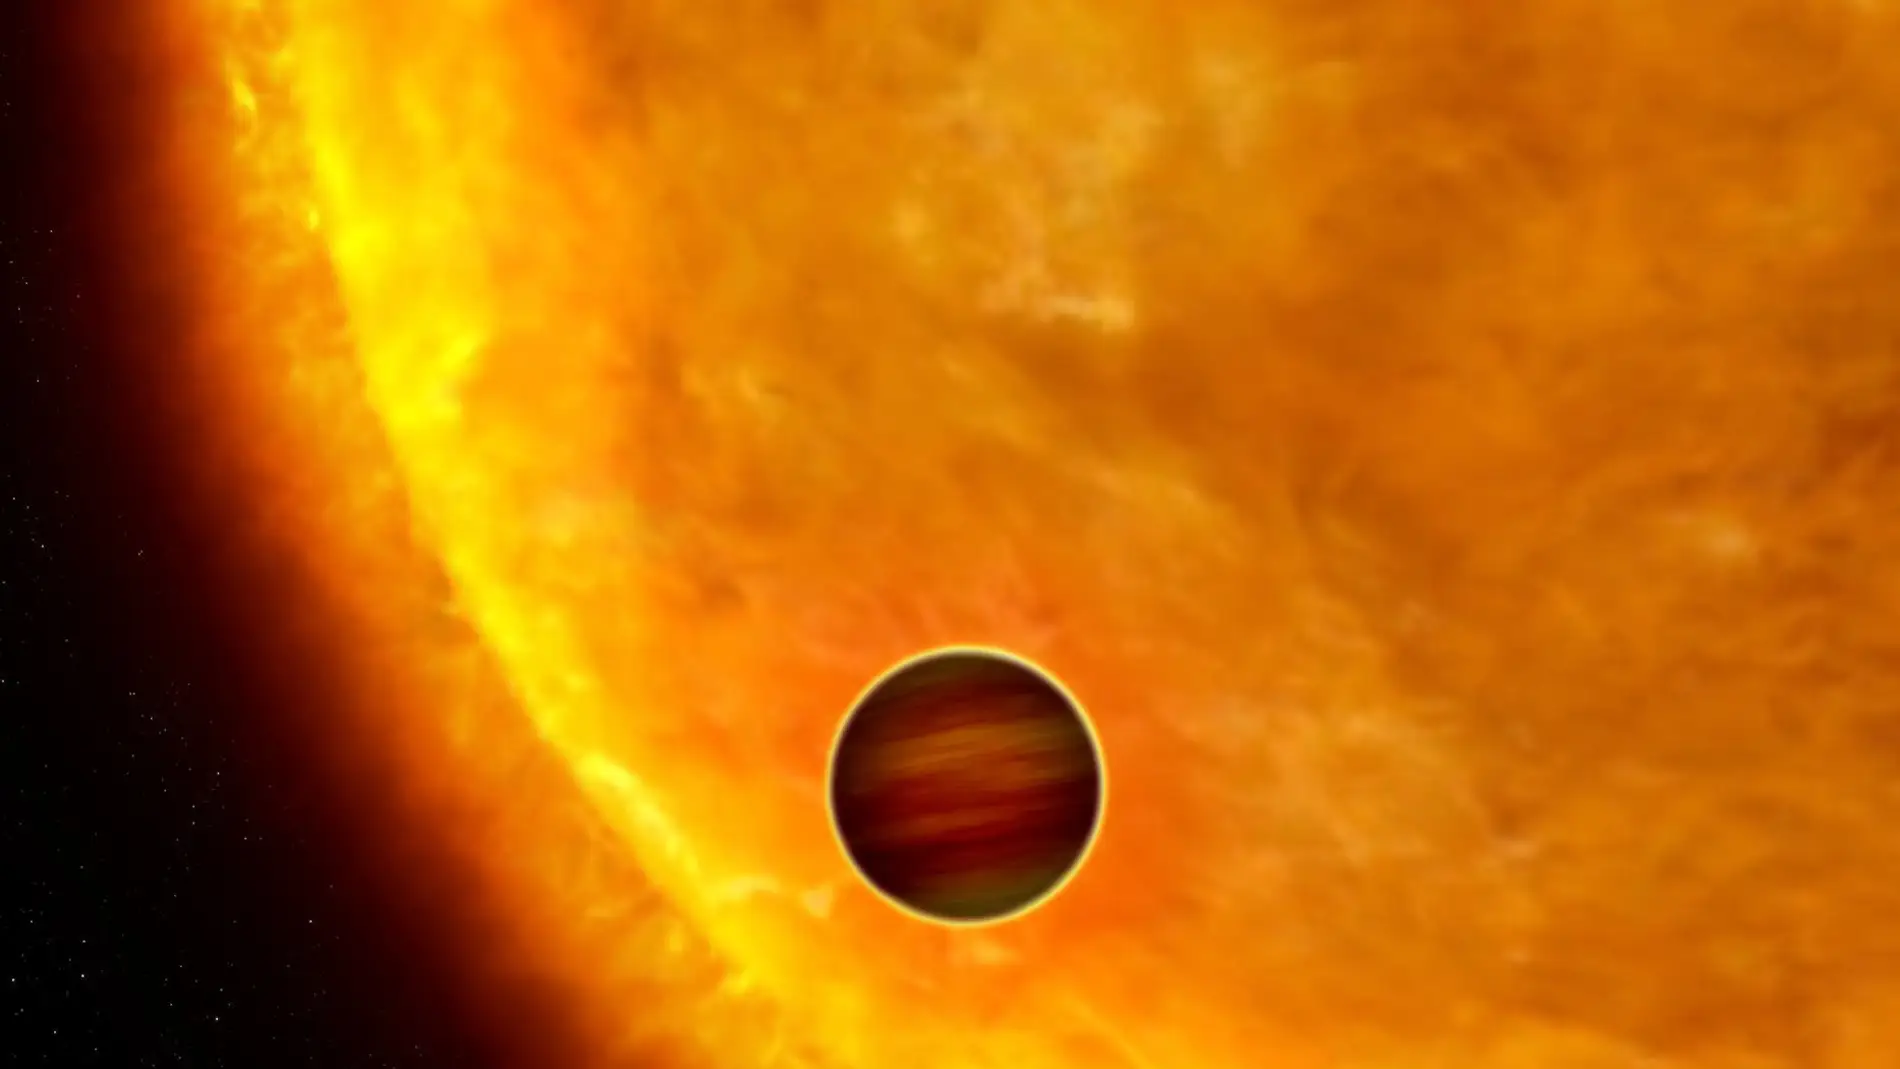 Representación artística de lo que podría ser el exoplaneta KELT-16b